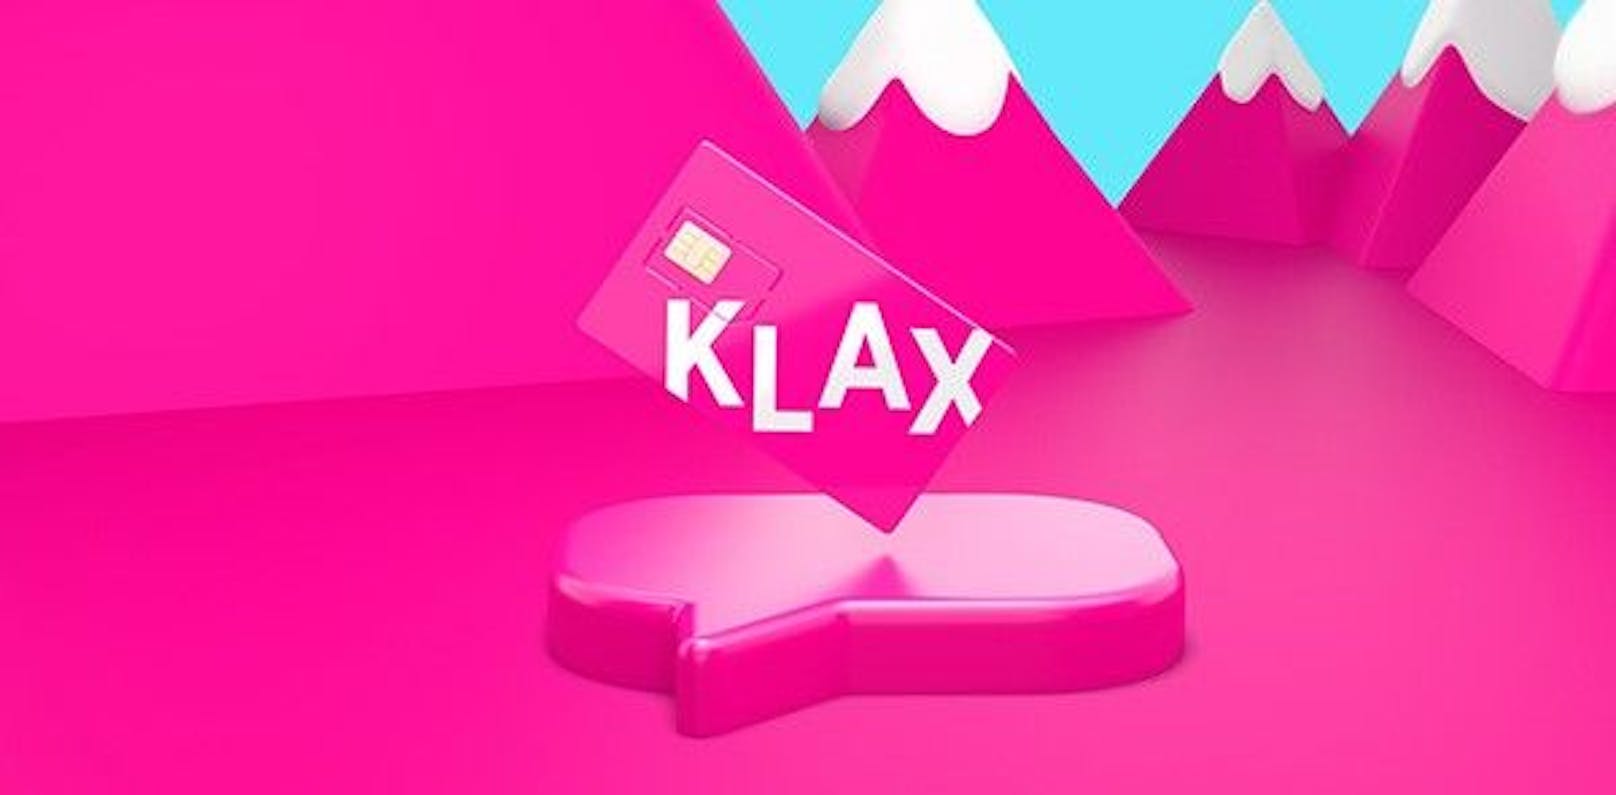 Nur für kurze Zeit: 10 GB gratis für Klax-Kunden.